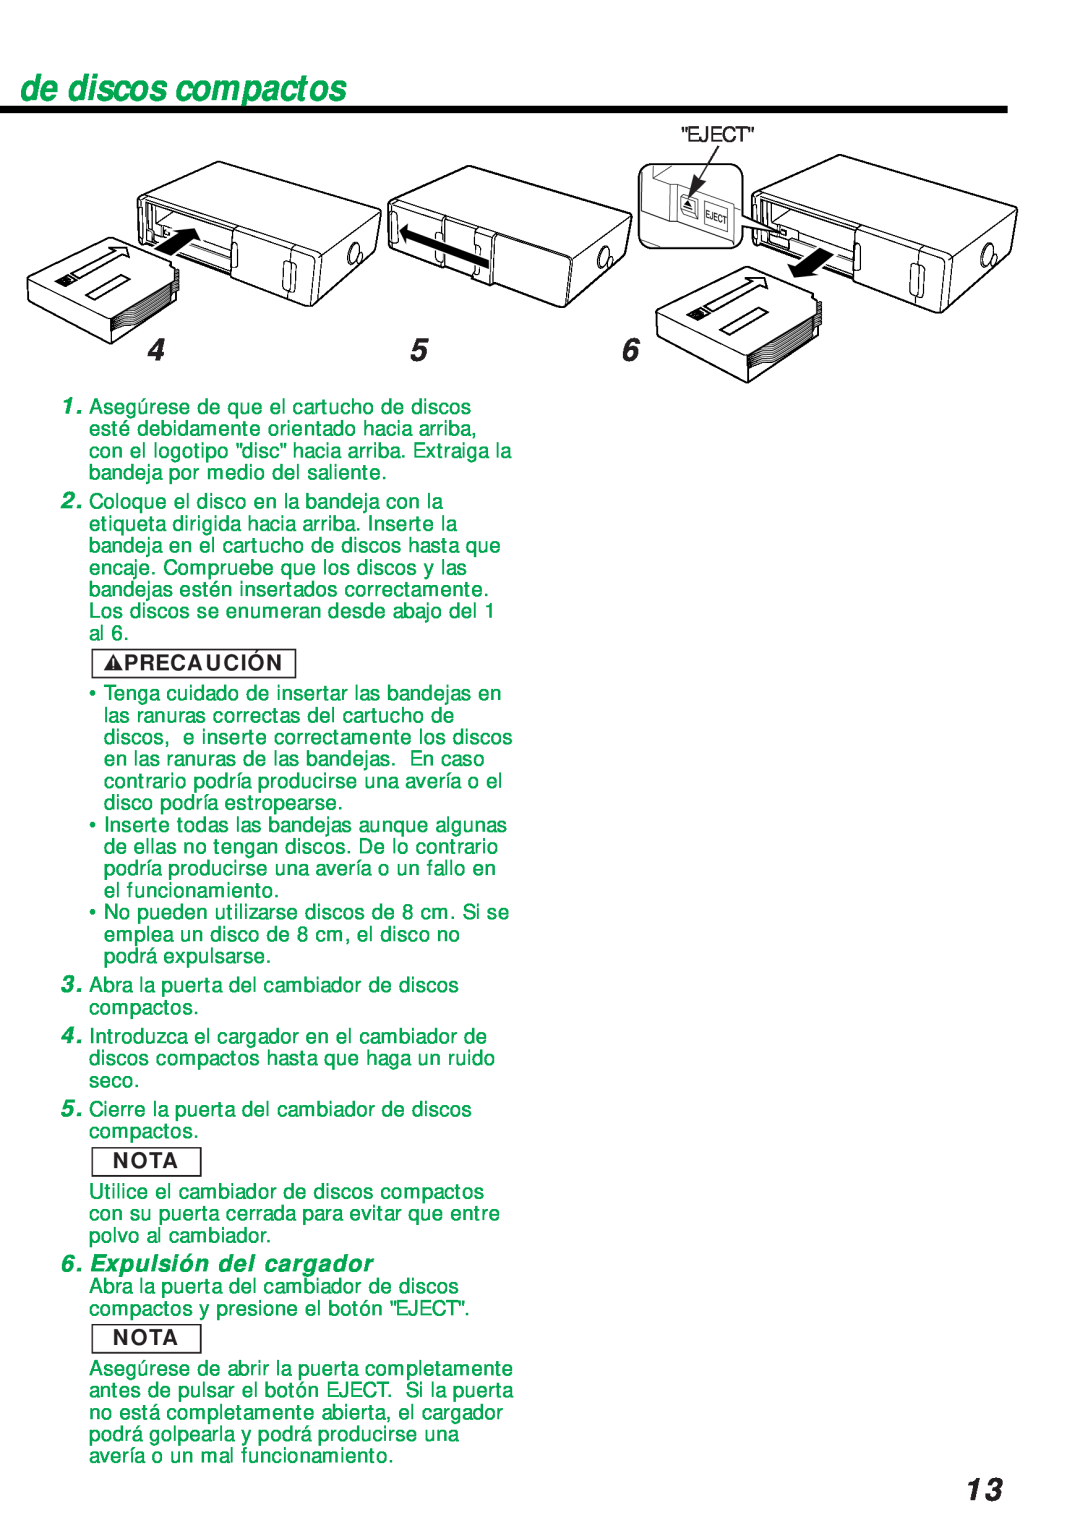 Kenwood KDC-C461 instruction manual Expulsión del cargador, de discos compactos, 2PRECAUCIÓN, Nota 